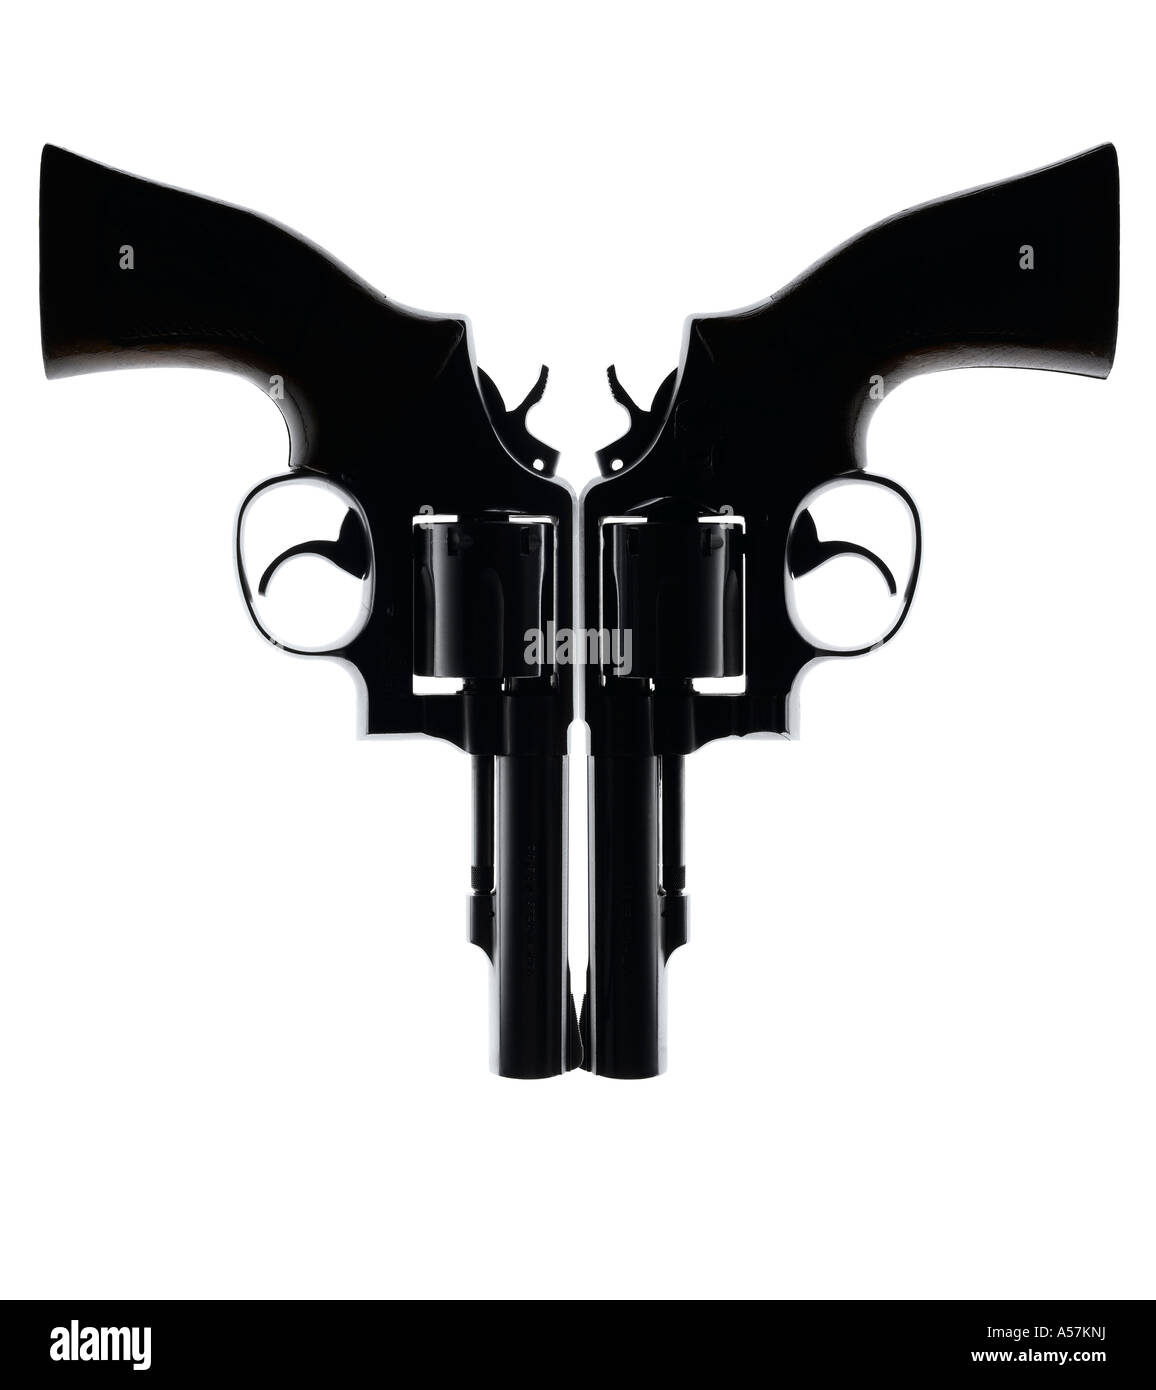 Deux pistolets placés de manière créative pour créer un visage ou de forme intéressante Banque D'Images